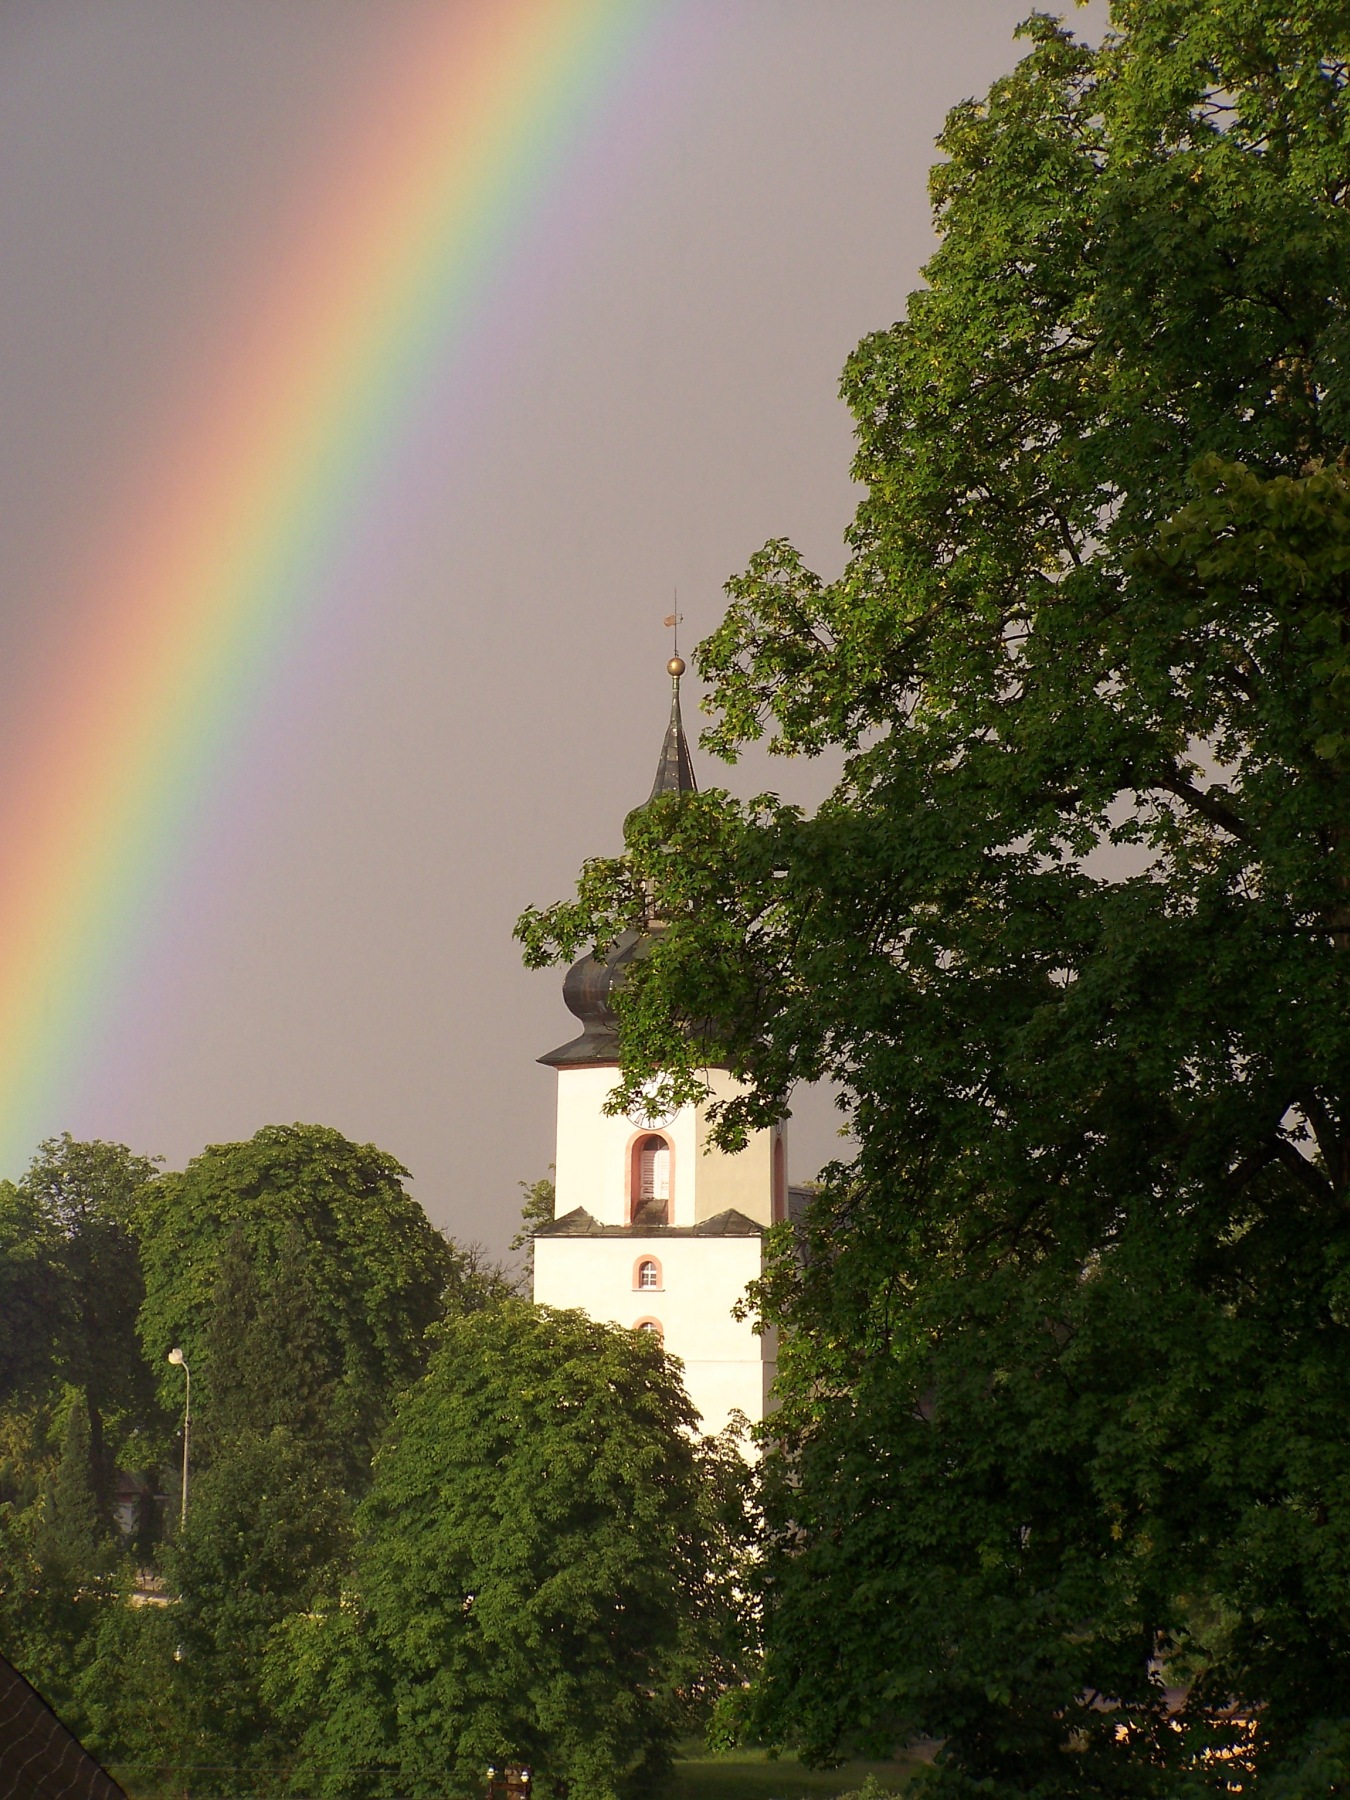 Church and rainbow